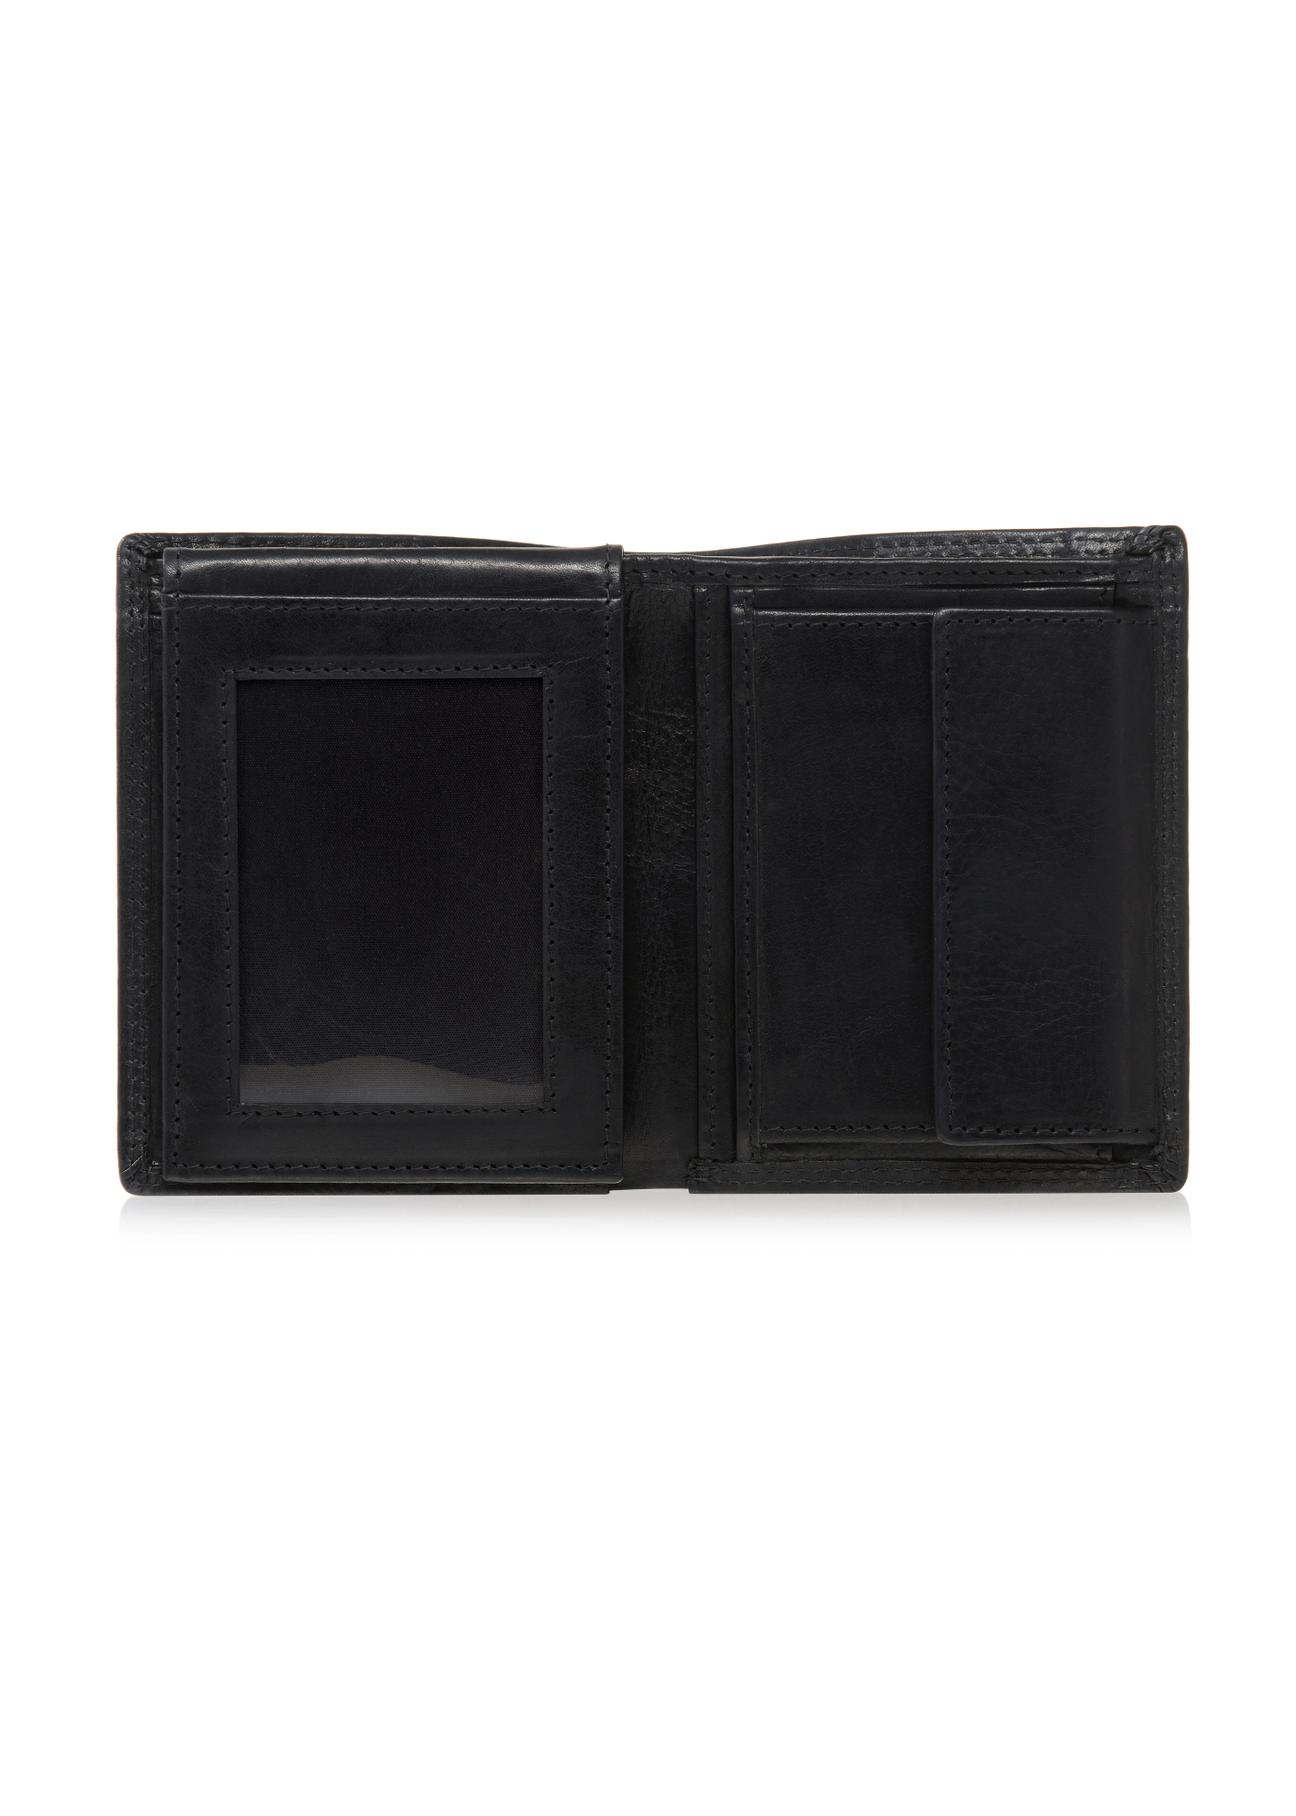 Czarny skórzany portfel męski PORMS-0464A-99(W23)